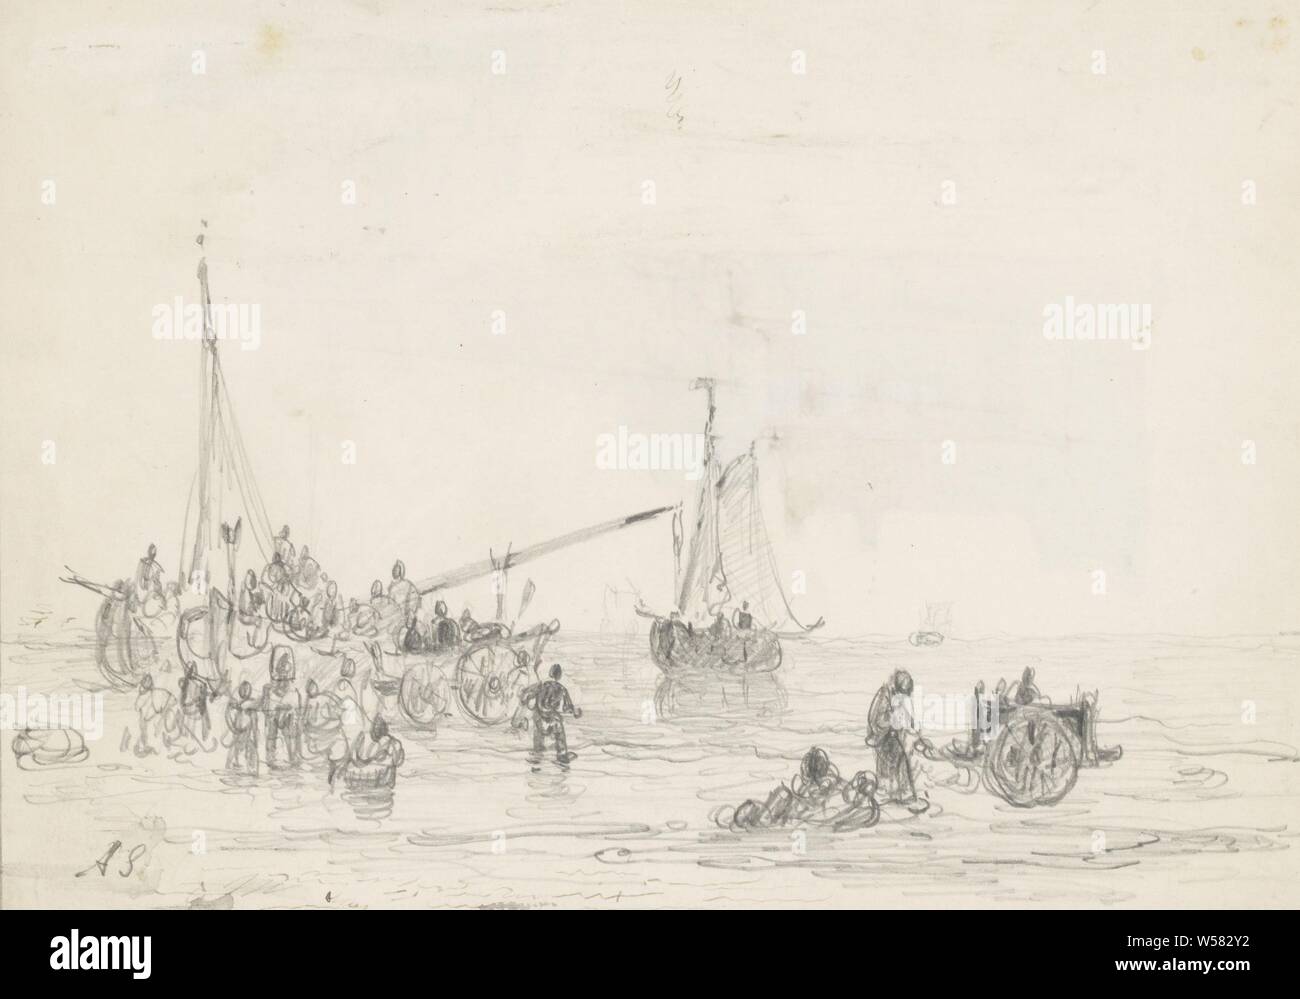 Beach Szene mit Figuren in der Nähe von einem Schiff, Andreas Schelfhout (vom Künstler signiert), 1797 - 1870, Papier, Tinte, Bleistift, Kugelschreiber, H 172 mm x B 243 mm Stockfoto